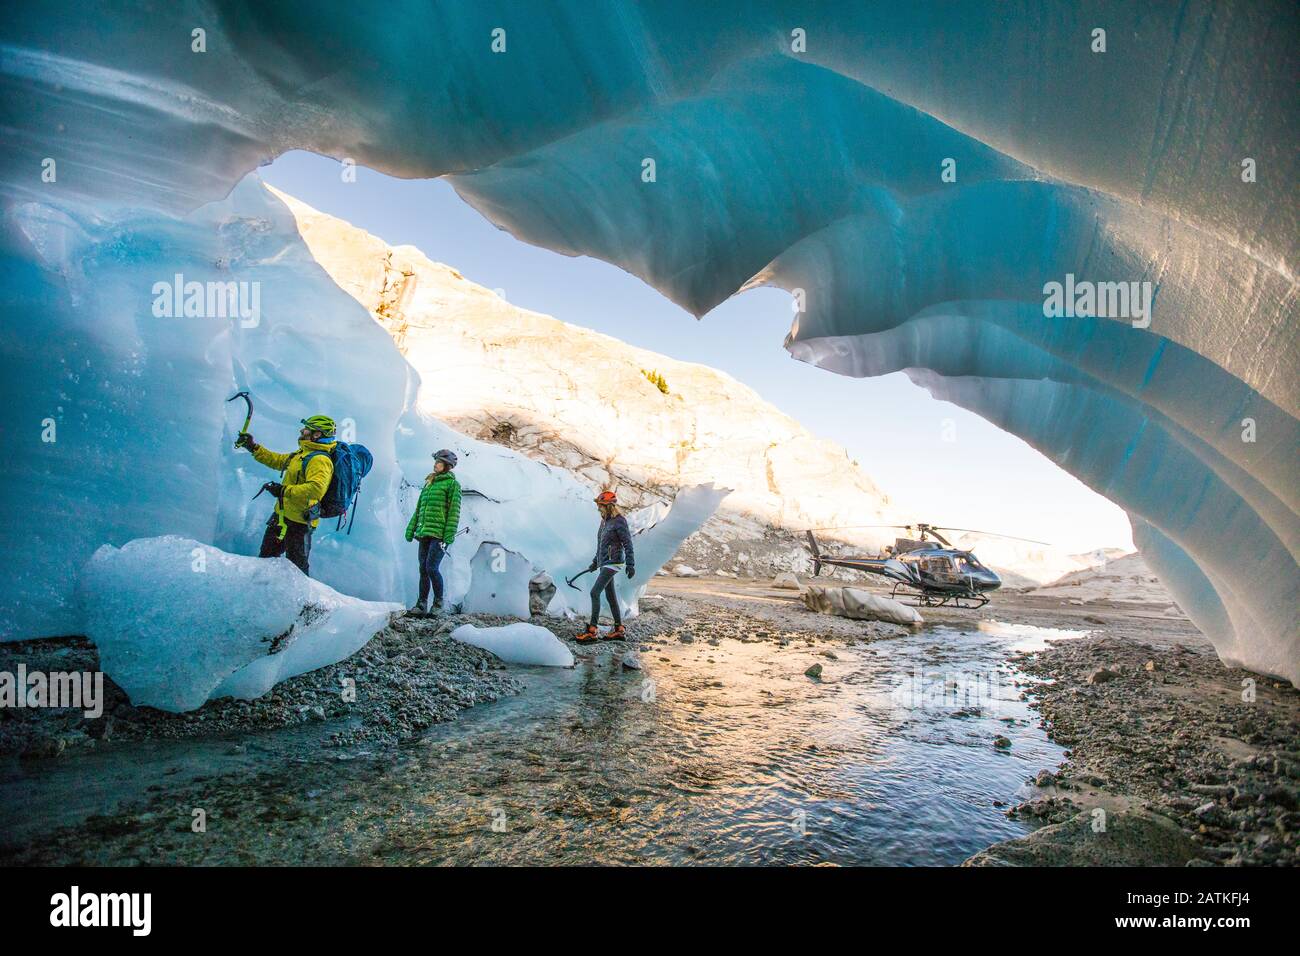 La guida alpina porta due clienti femminili nella grotta di ghiaccio per andare in arrampicata. Foto Stock